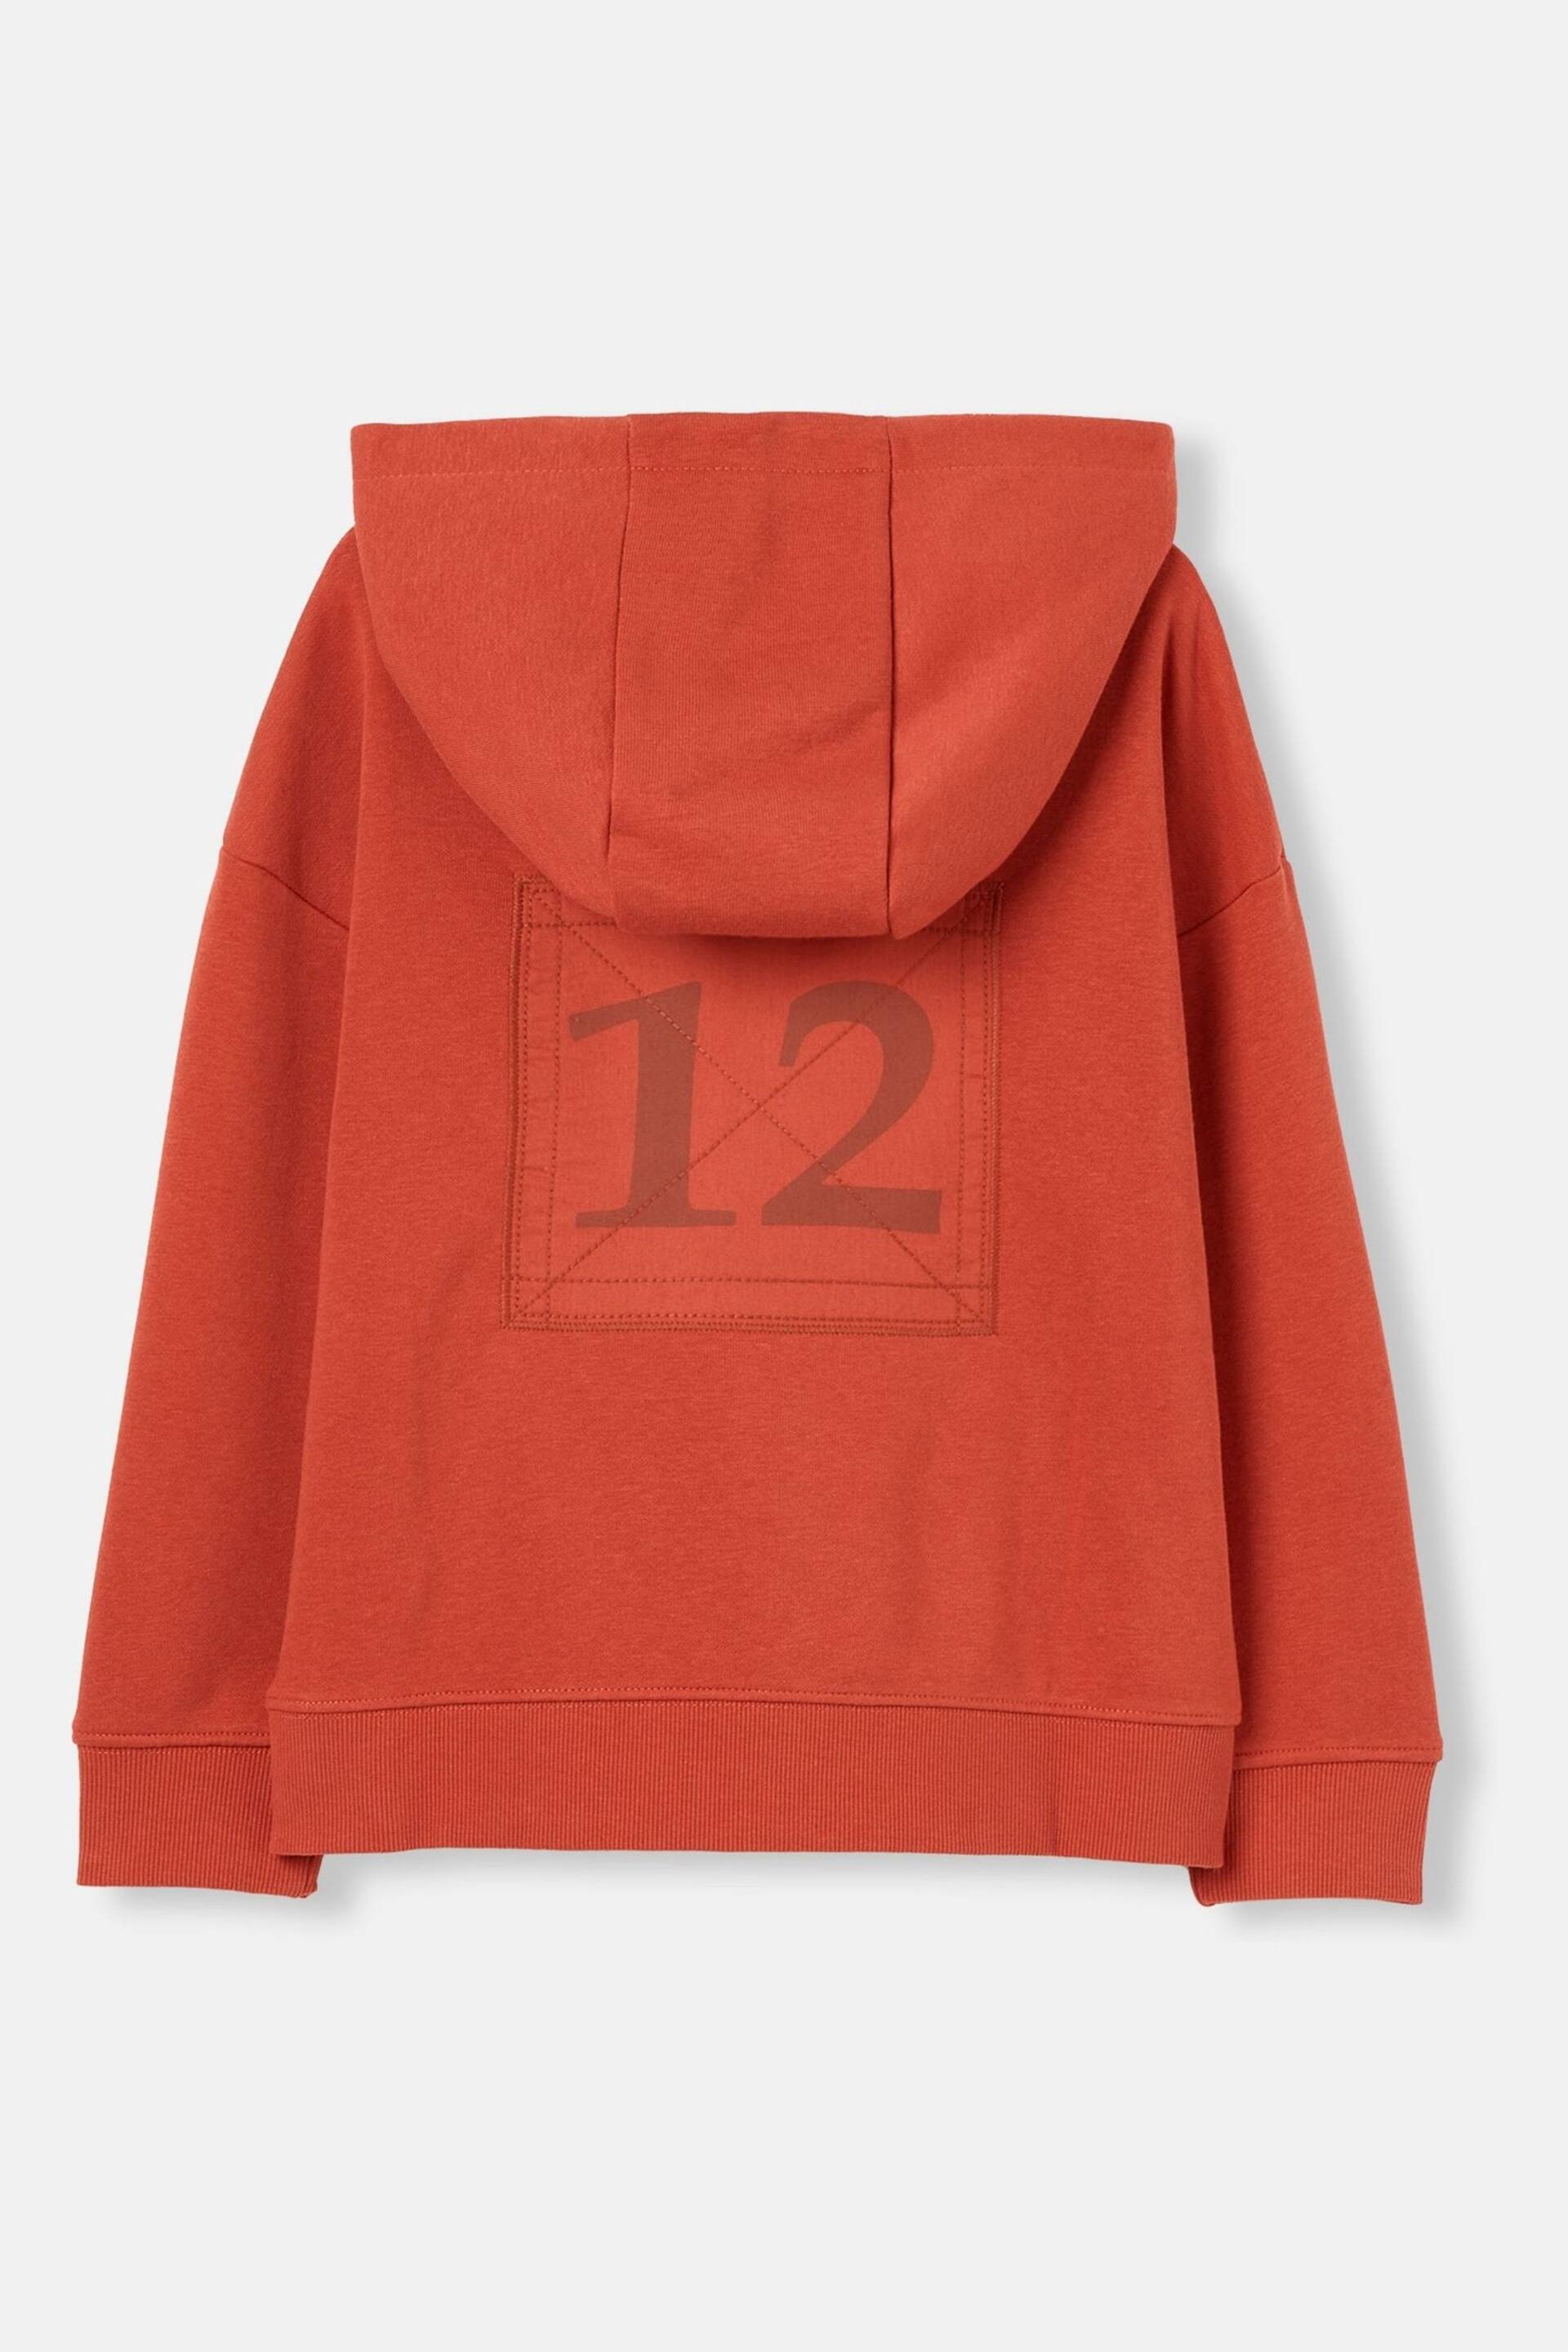 Joules Parkside Orange Hooded Sweatshirt - Image 2 of 6